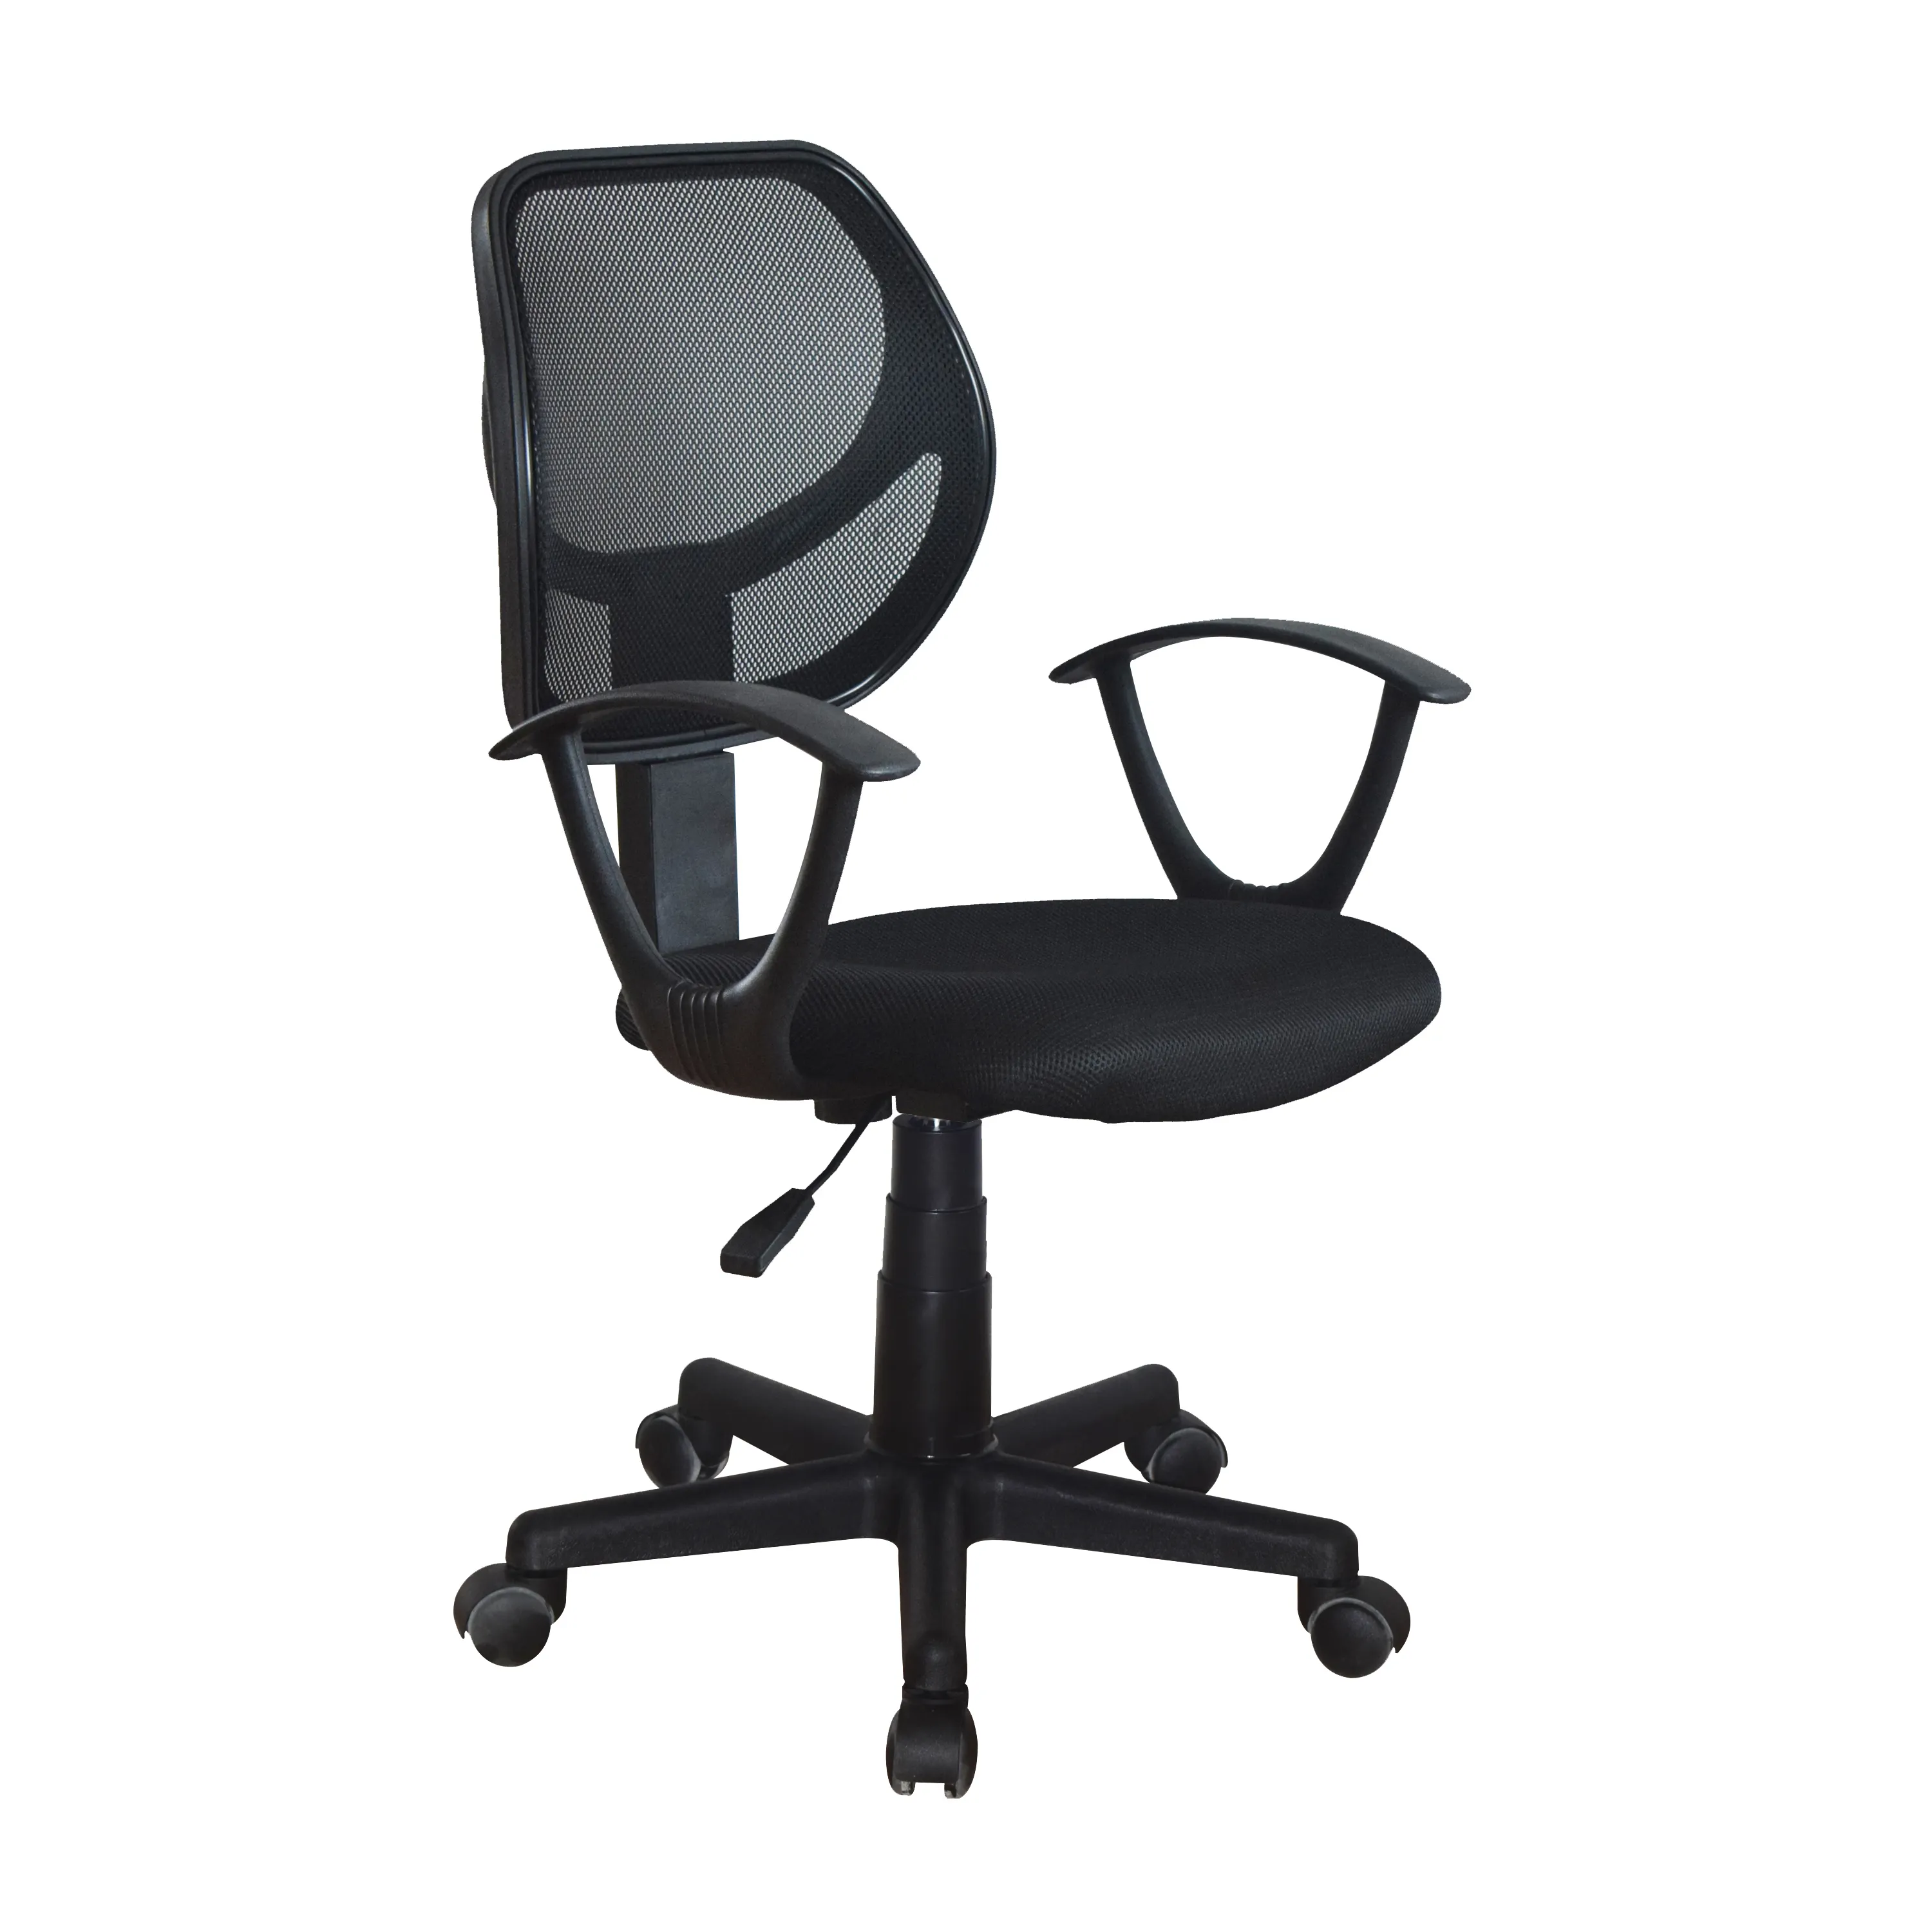 Ingrosso prezzo a buon mercato cina Relax girevole sedia da scrivania per schienale alto supporto in Mesh sedia da ufficio Executive